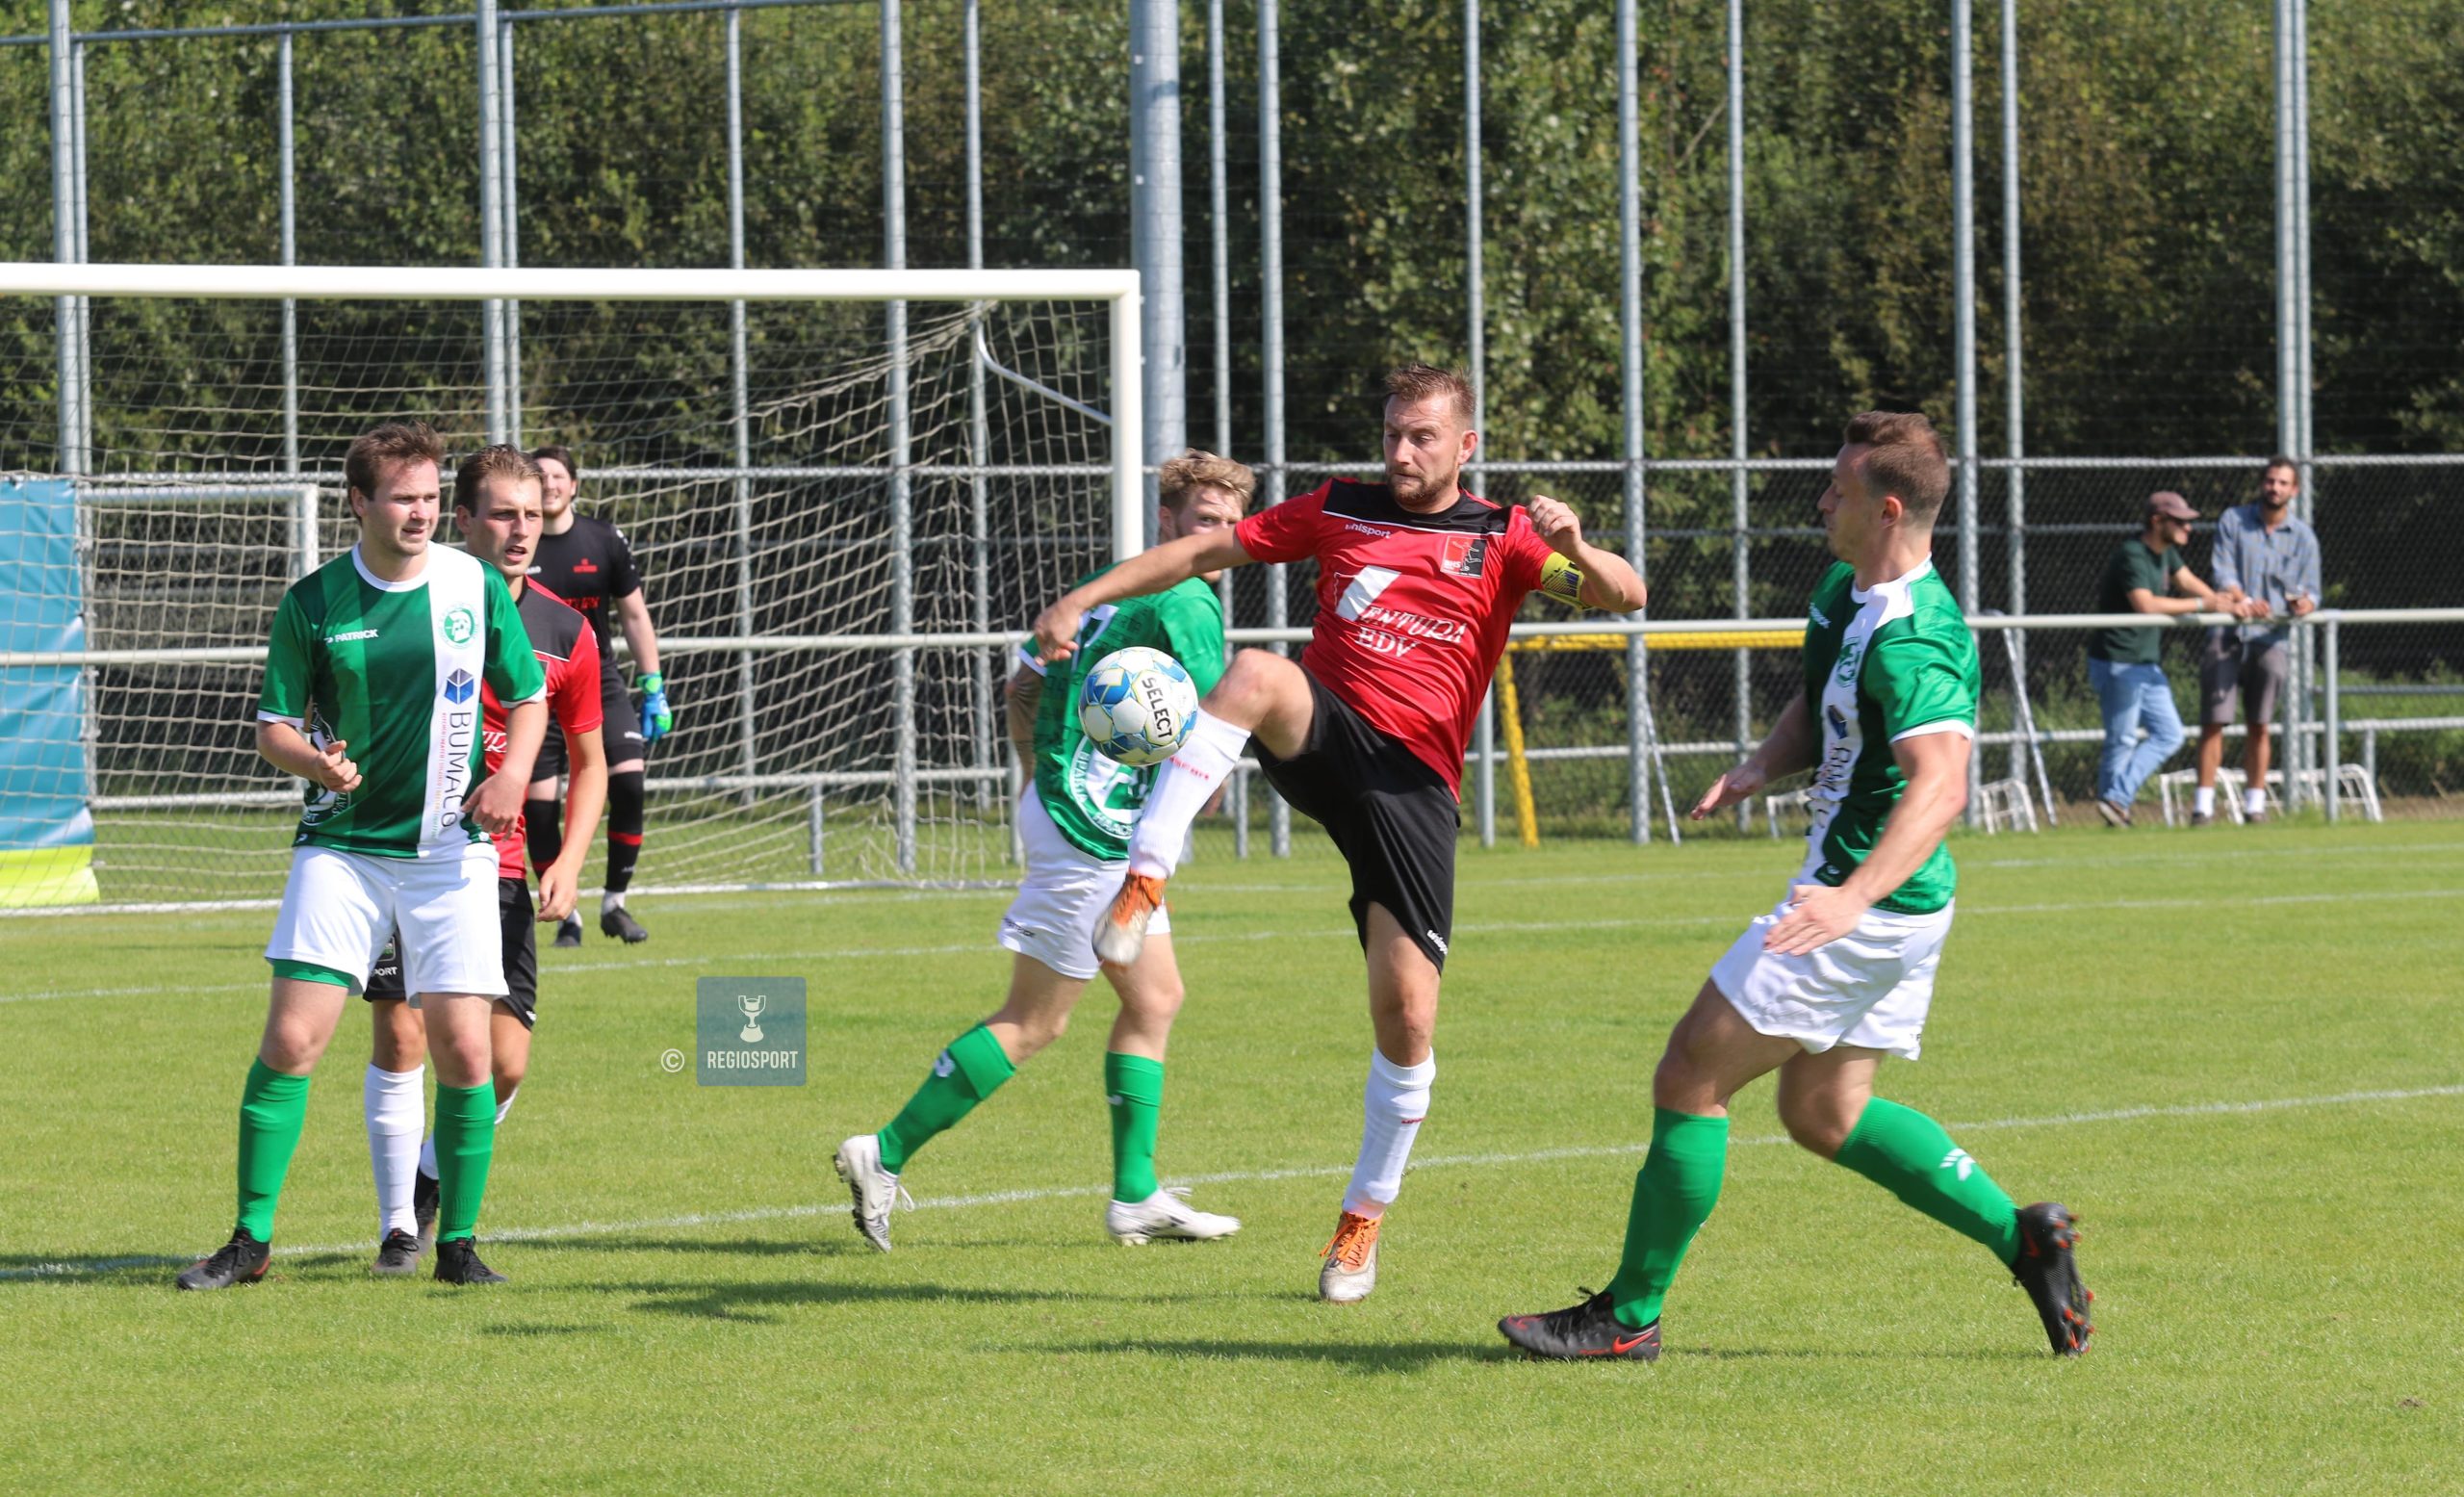 Tuur Poukens hield zich staande en scoorde een hattrick voor Sparta Haacht Statie tegen Langdorp!